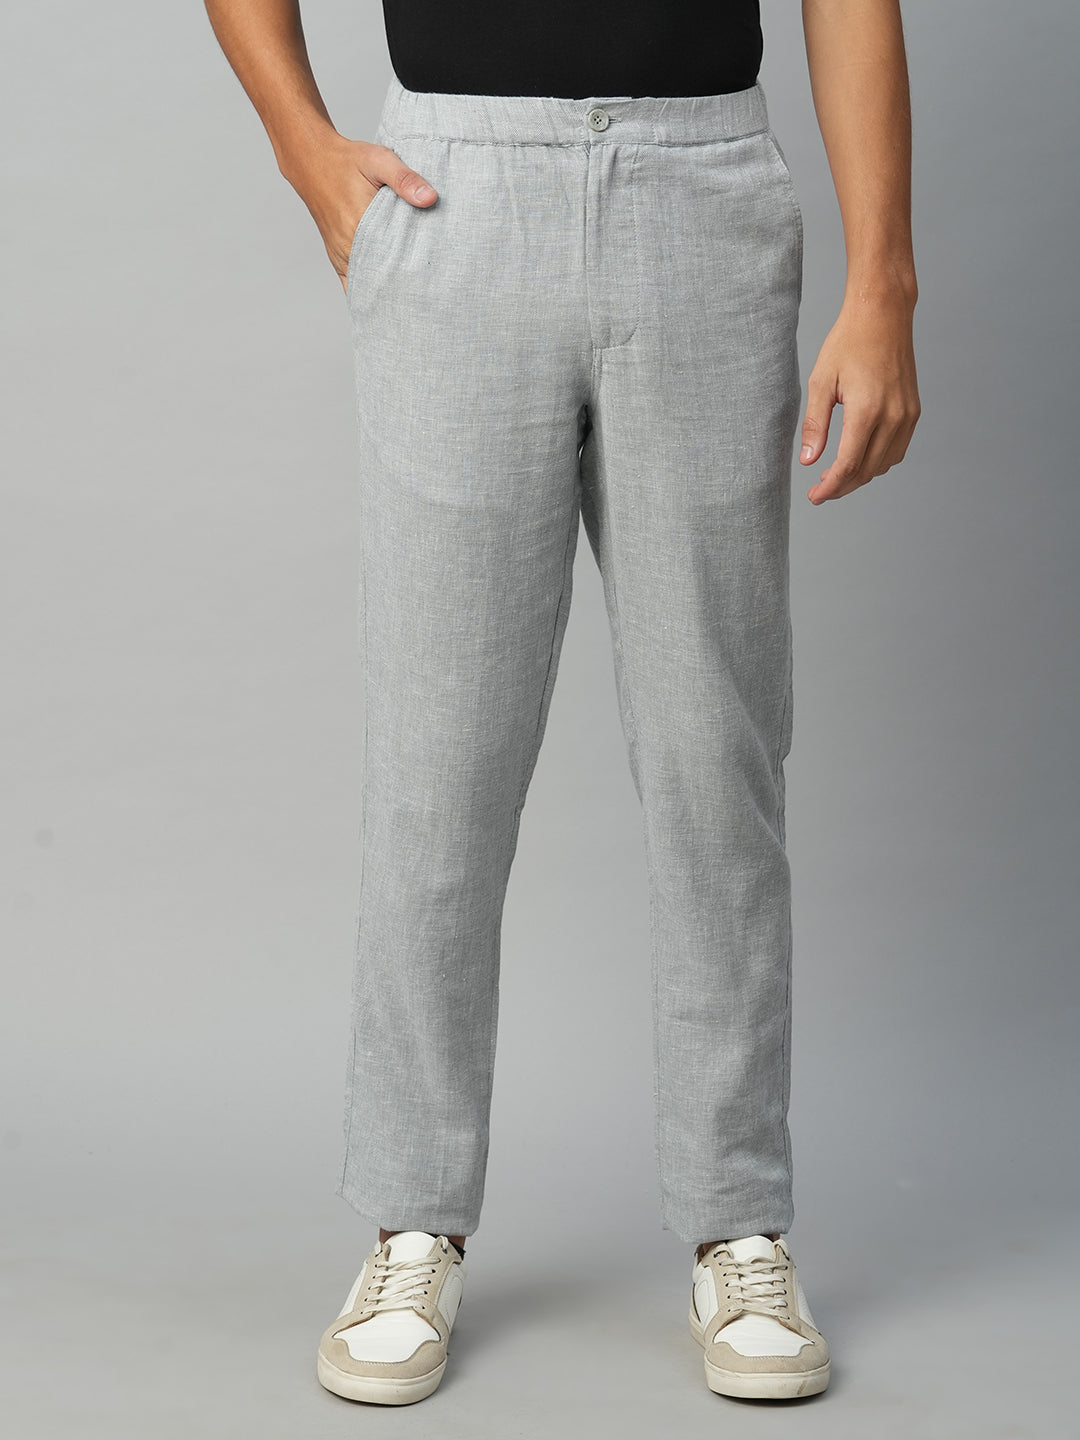 Men's Grey Cotton Linen Regular Fit Pant